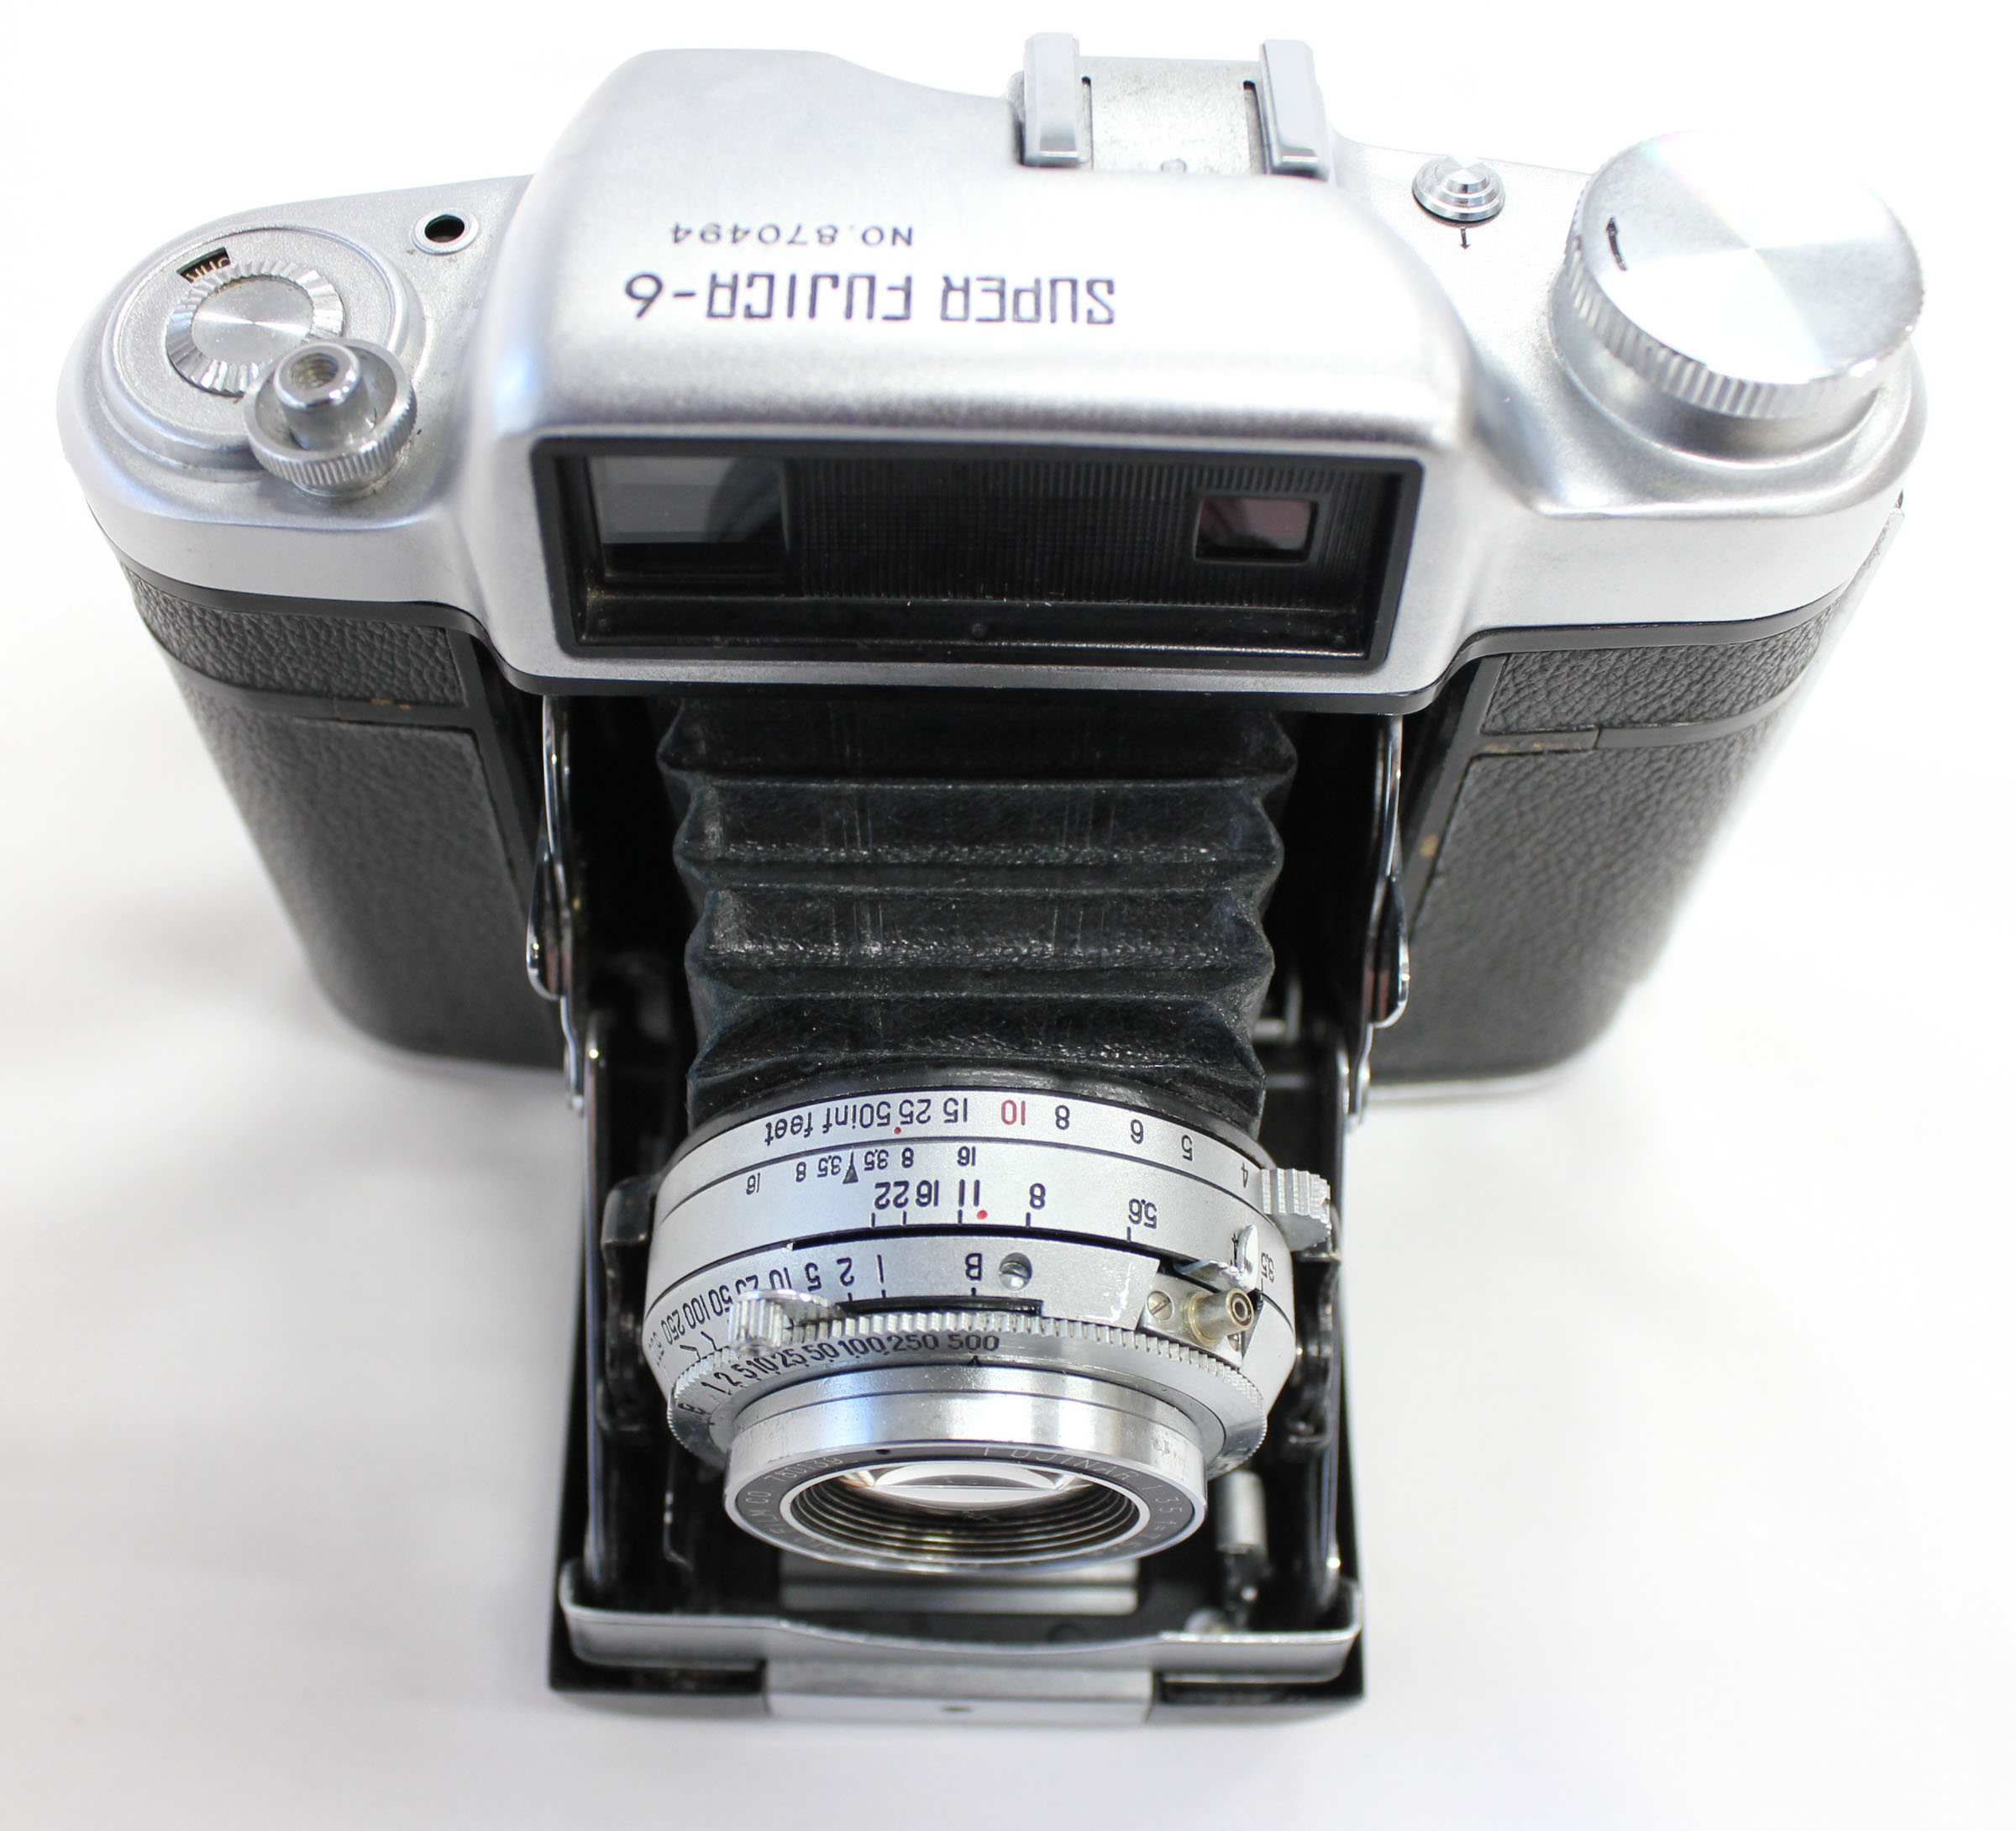 Fuji Super Fujica-6 Six 6x6 Medium Format Film Camera with Fujinar 75mm F/3.5 from Japan Photo 7